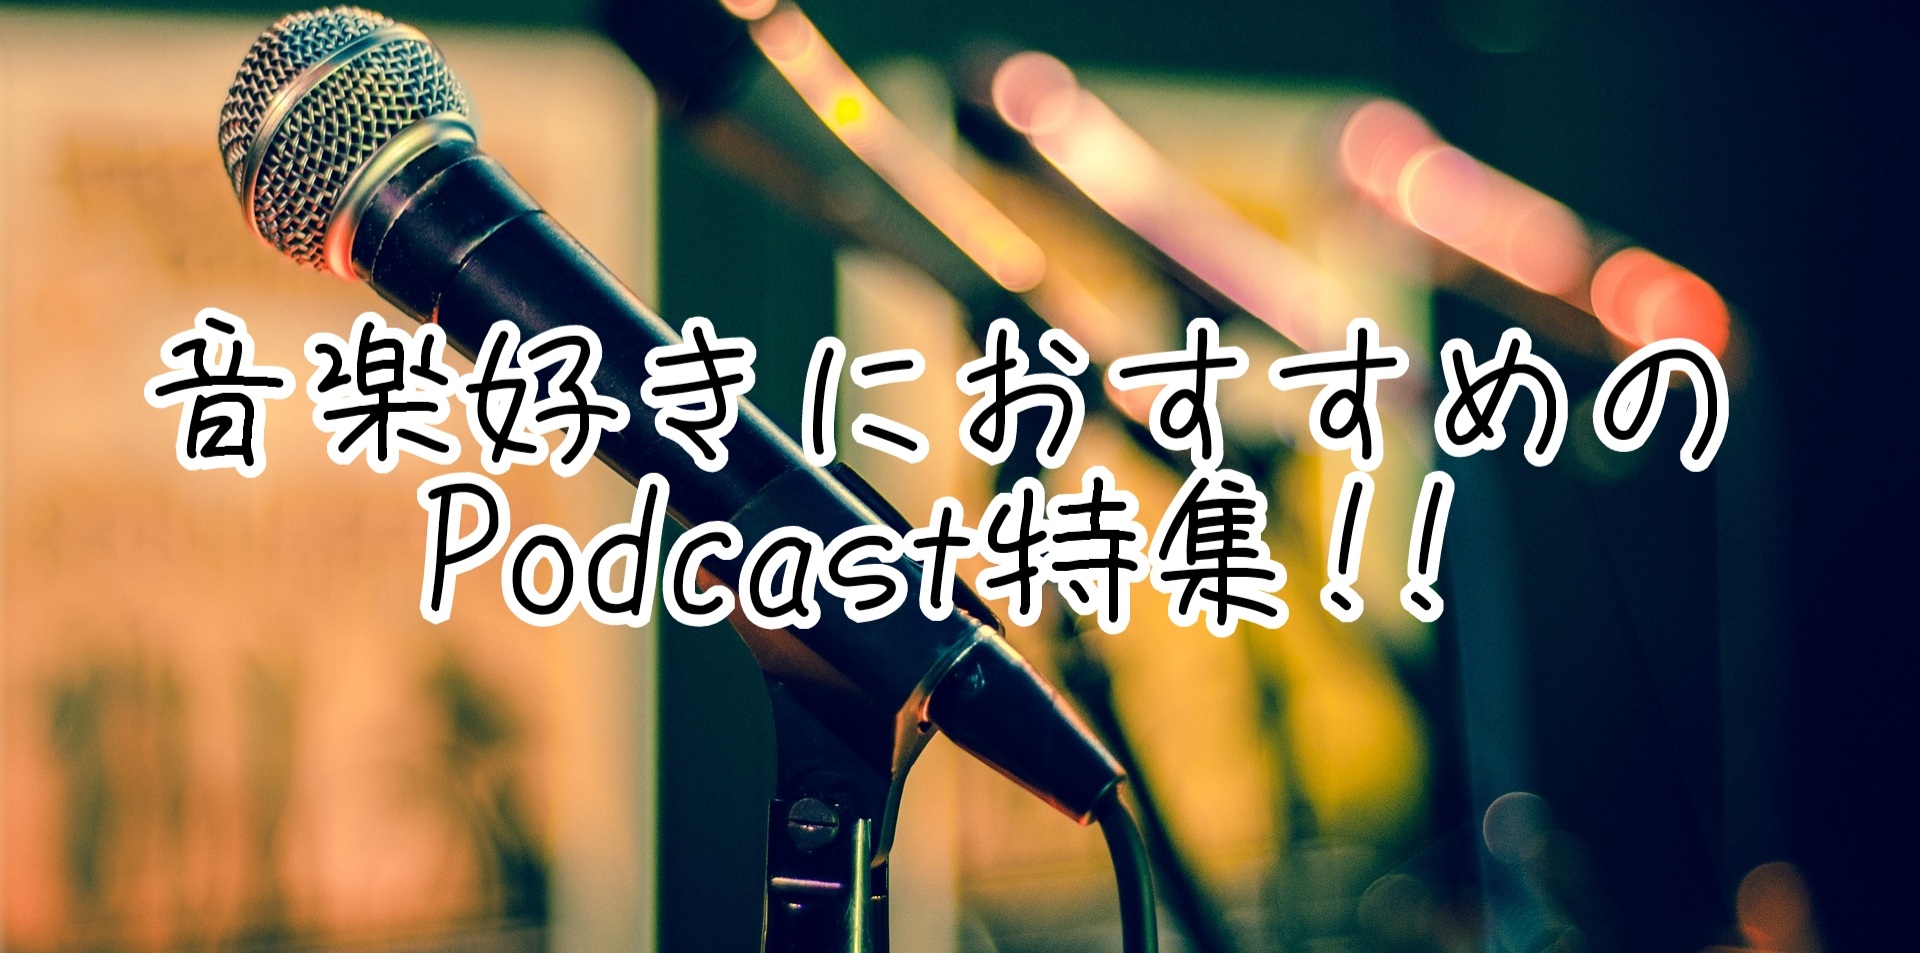 22 音楽好きにおすすめのポッドキャスト特集 Podcast Japan Podcast Pickup